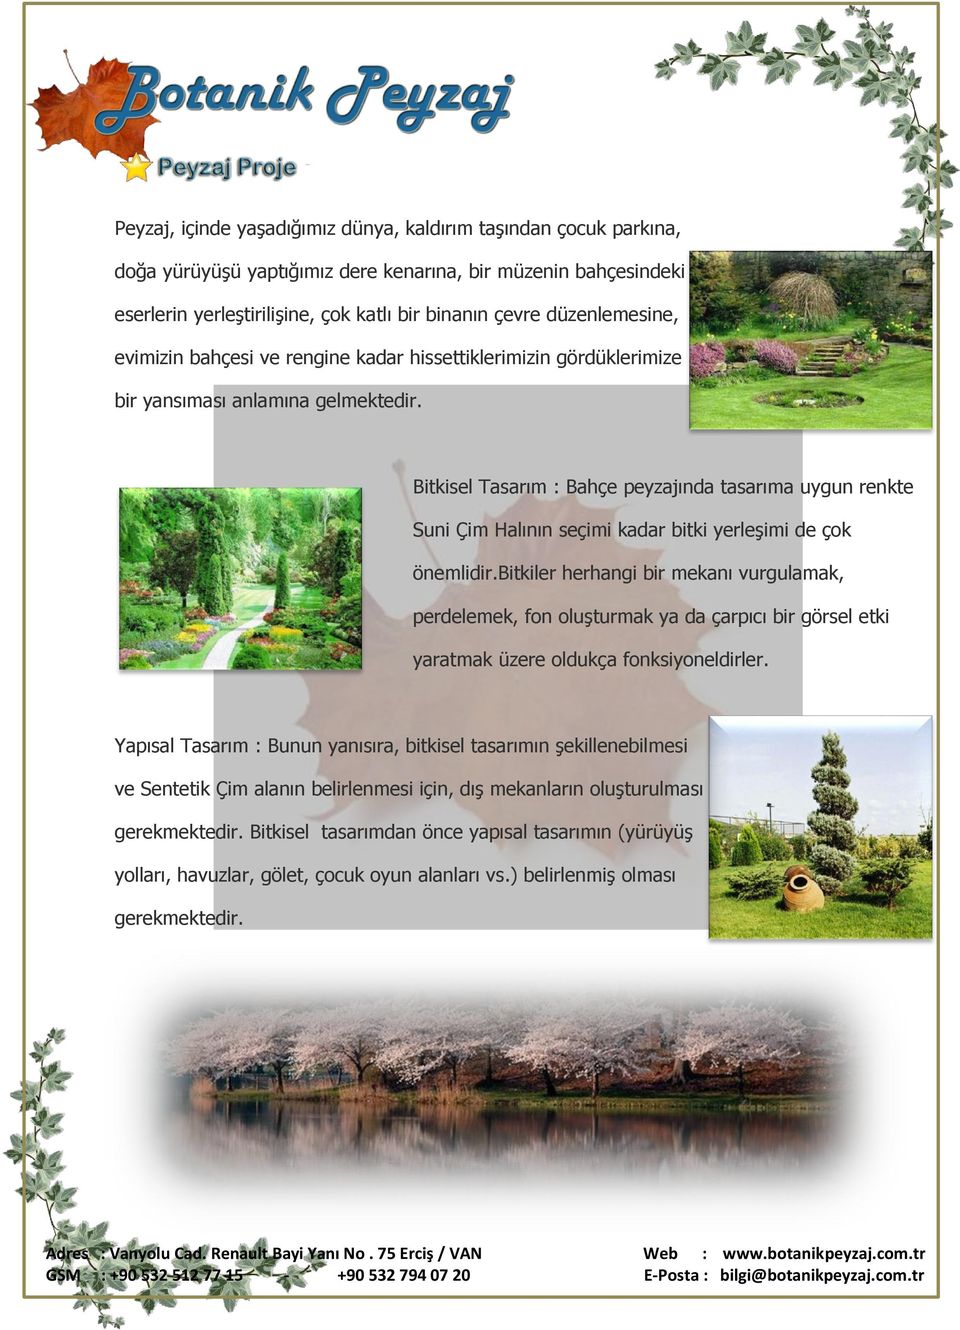 Bitkisel Tasarım : Bahçe peyzajında tasarıma uygun renkte Suni Çim Halının seçimi kadar bitki yerleşimi de çok önemlidir.